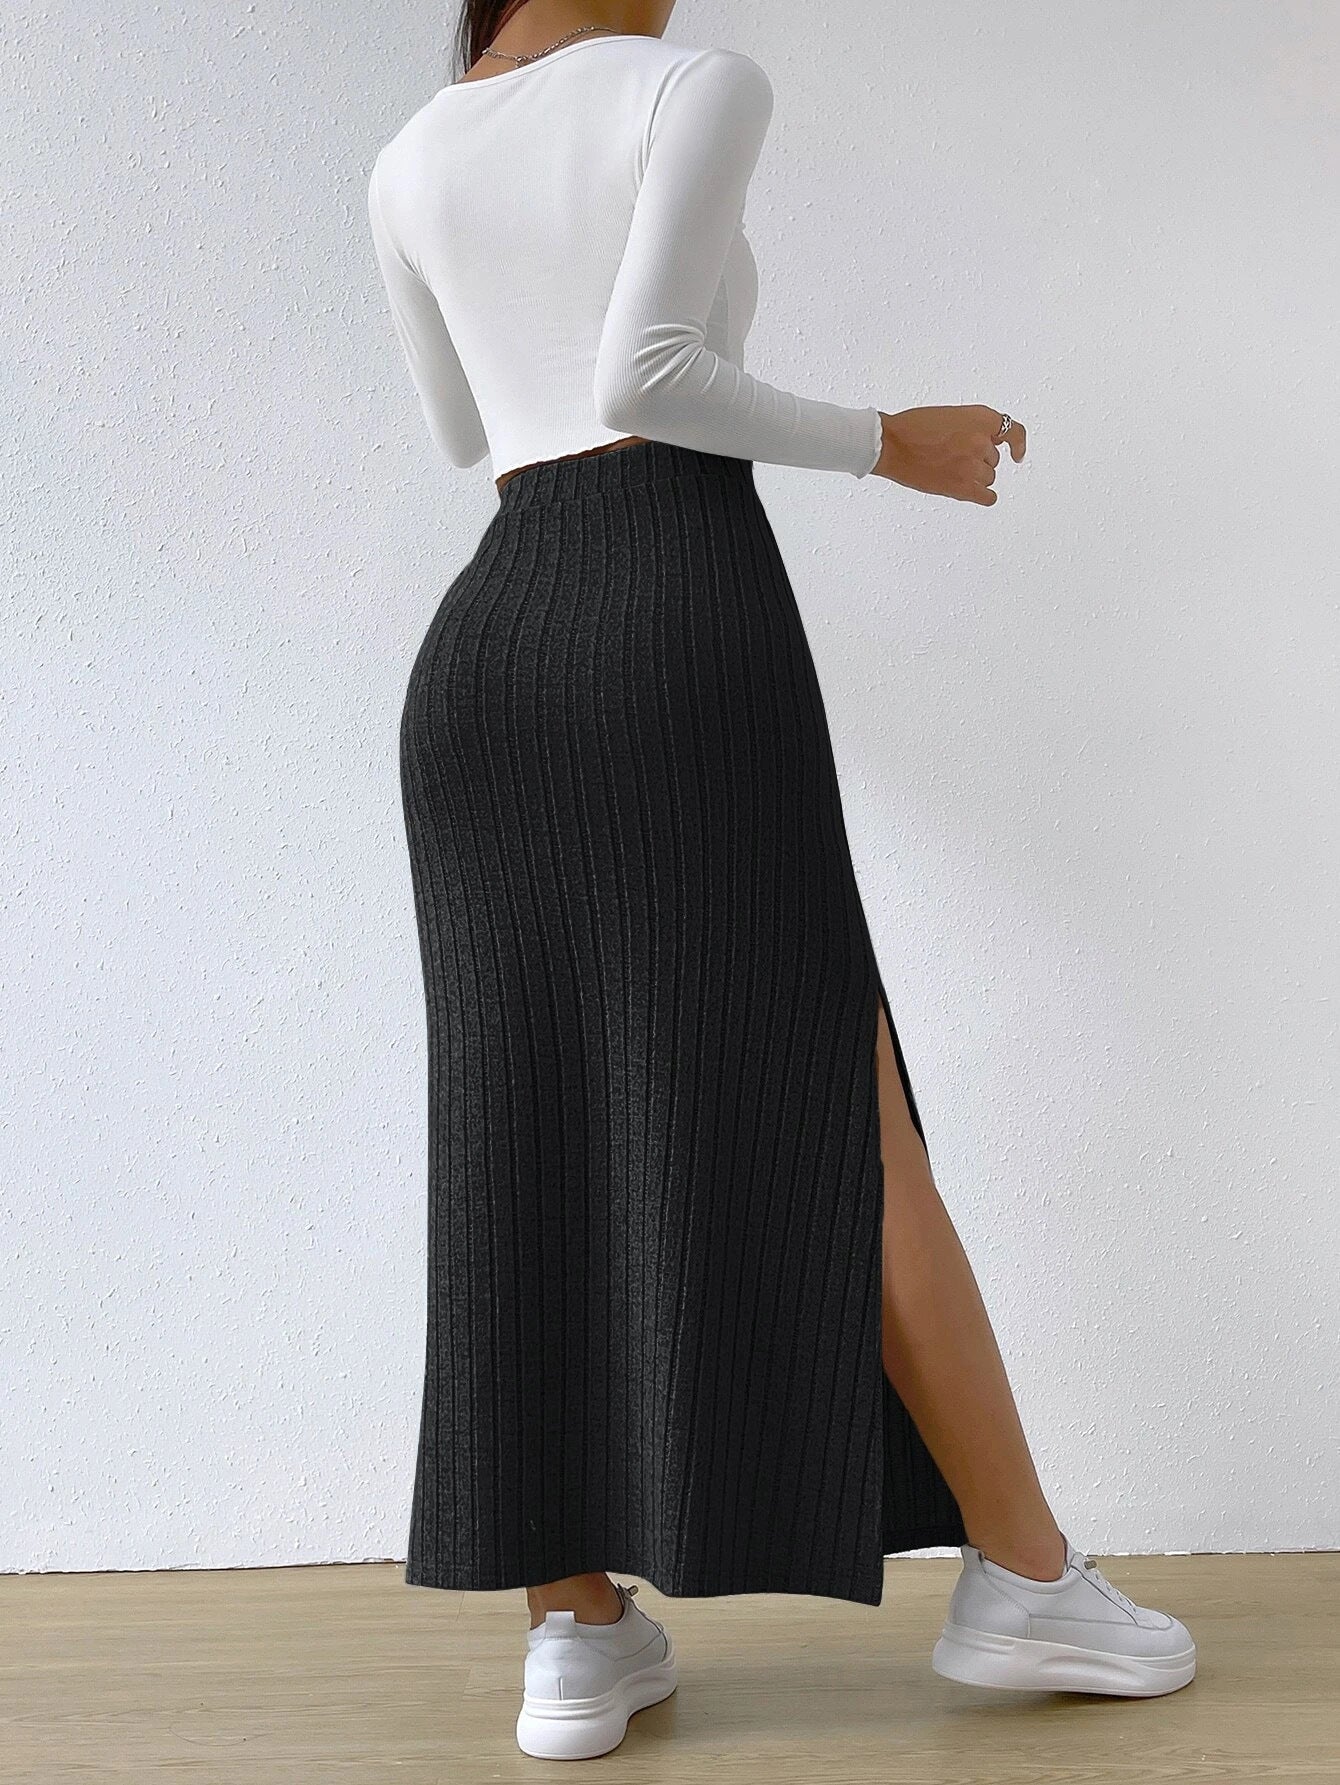 Women's Spring Long Skirt High Waist Side Slit Slim Fit Knitted Skirt